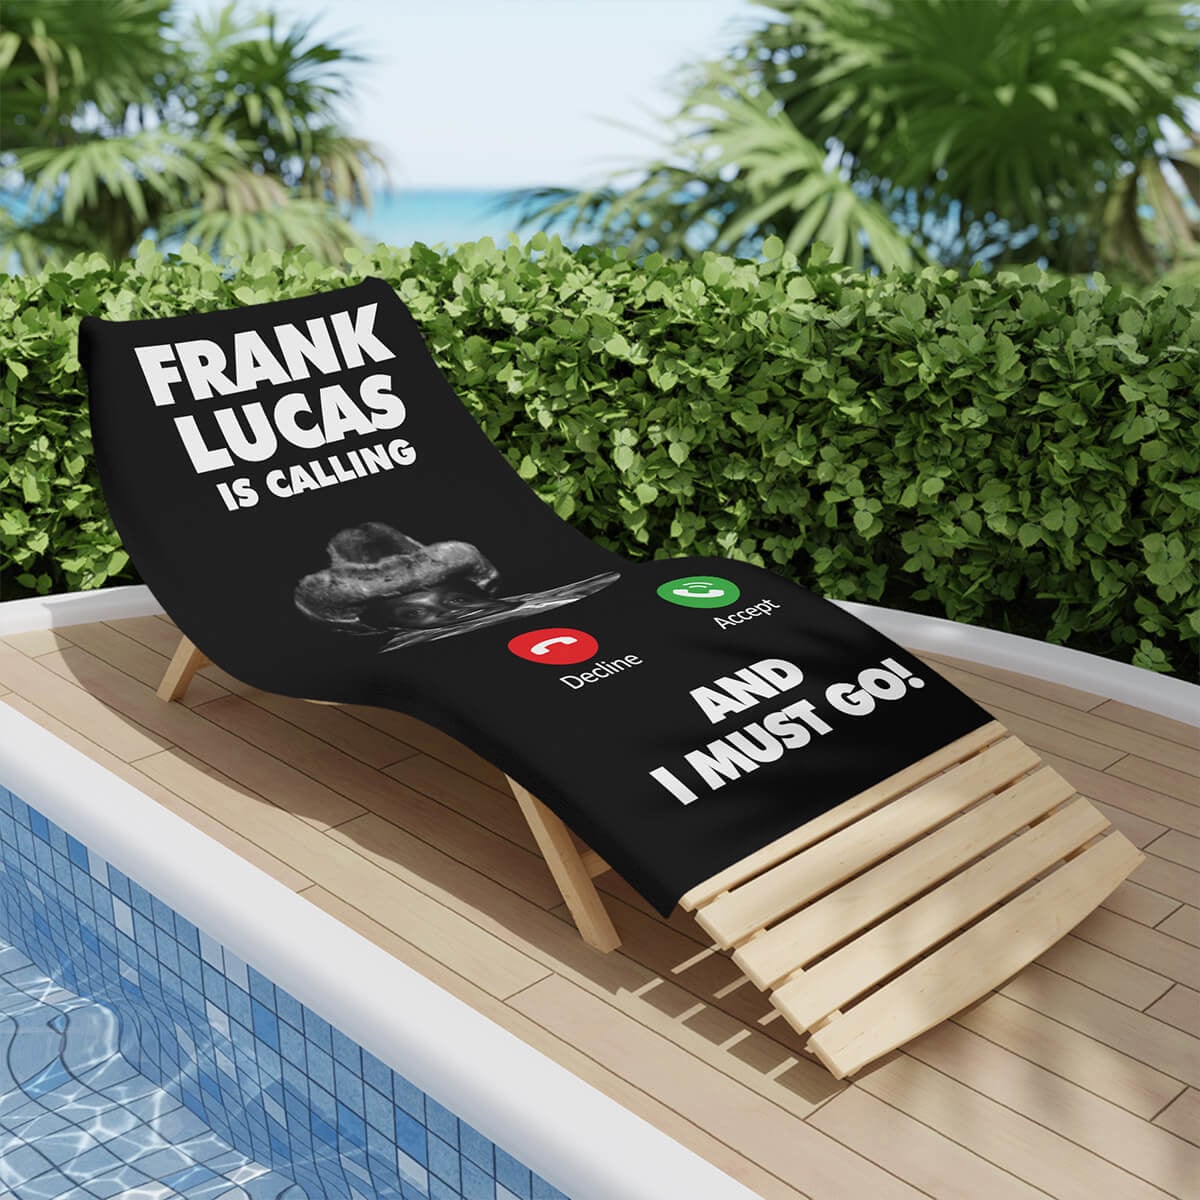 Frank Lucas ringer og I Must Go Gangster Beach Towel